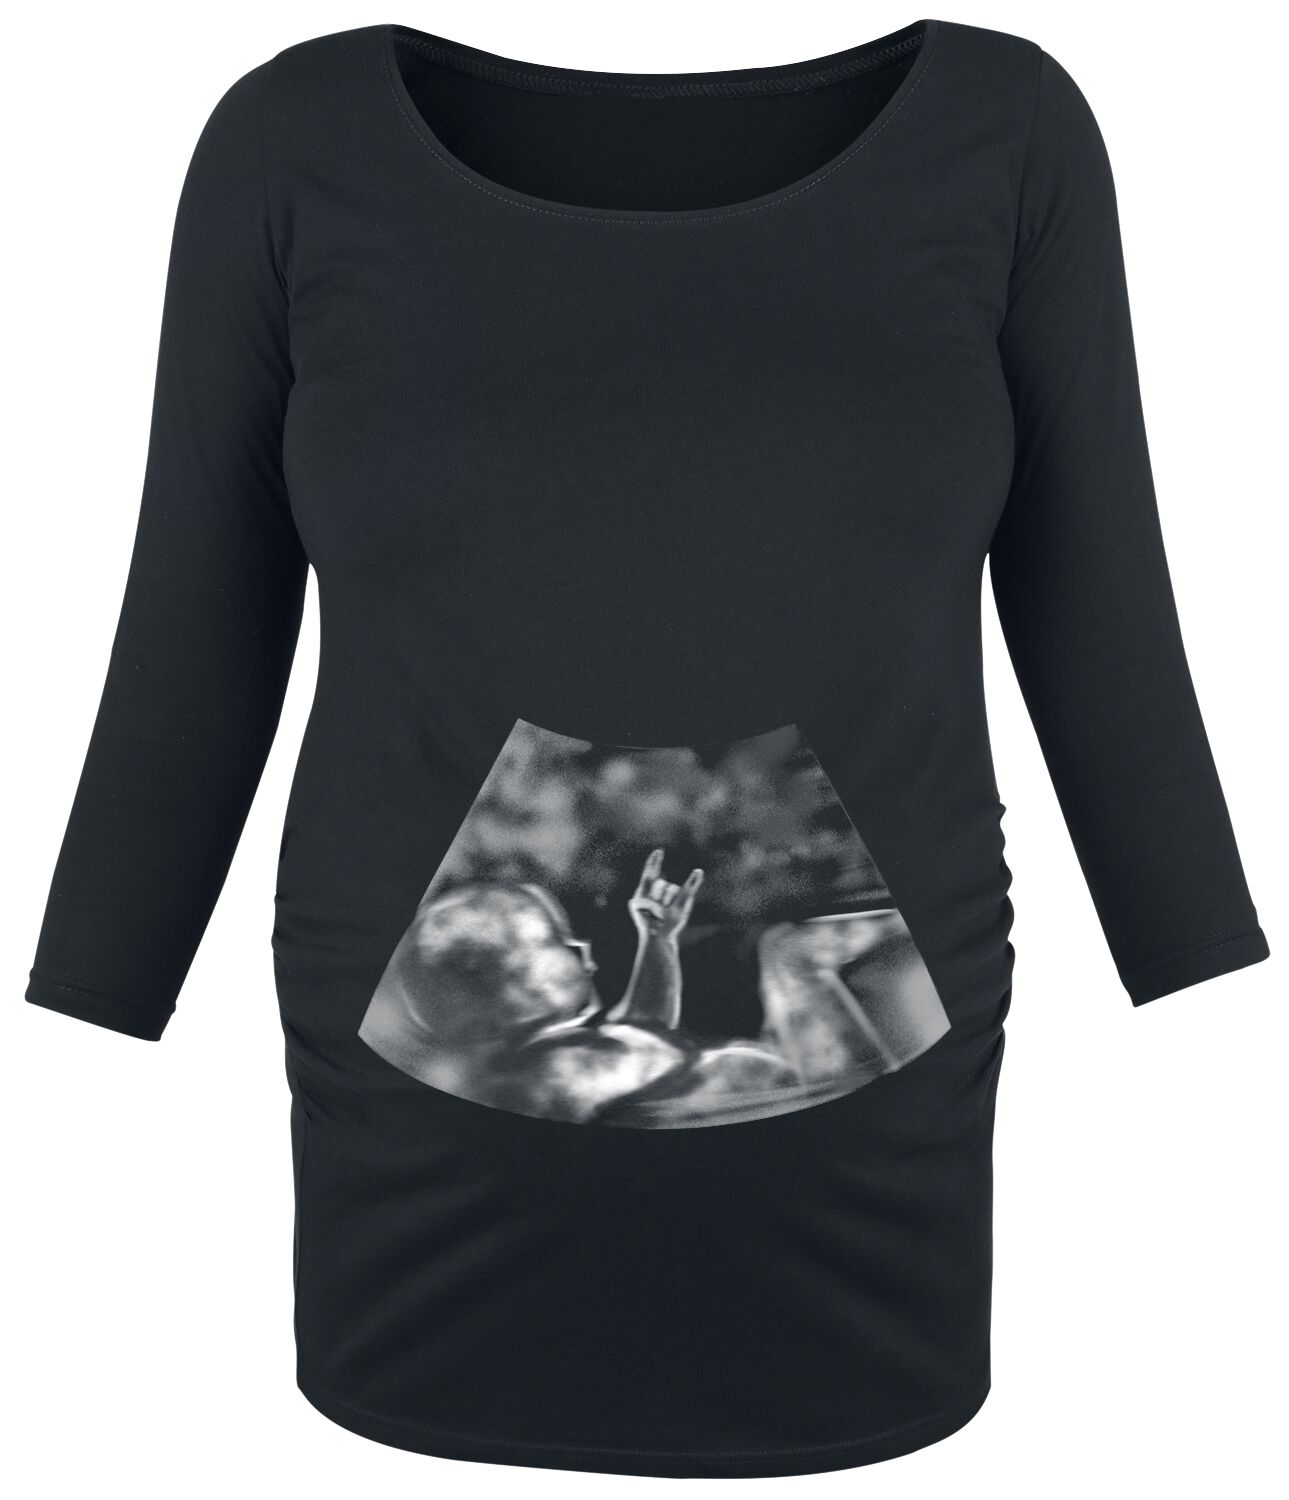 Zwangerschap vastleggen; 25 tips en ideeën om herinneringen te maken / knutselen aan de zwangere buik - Mamaliefde